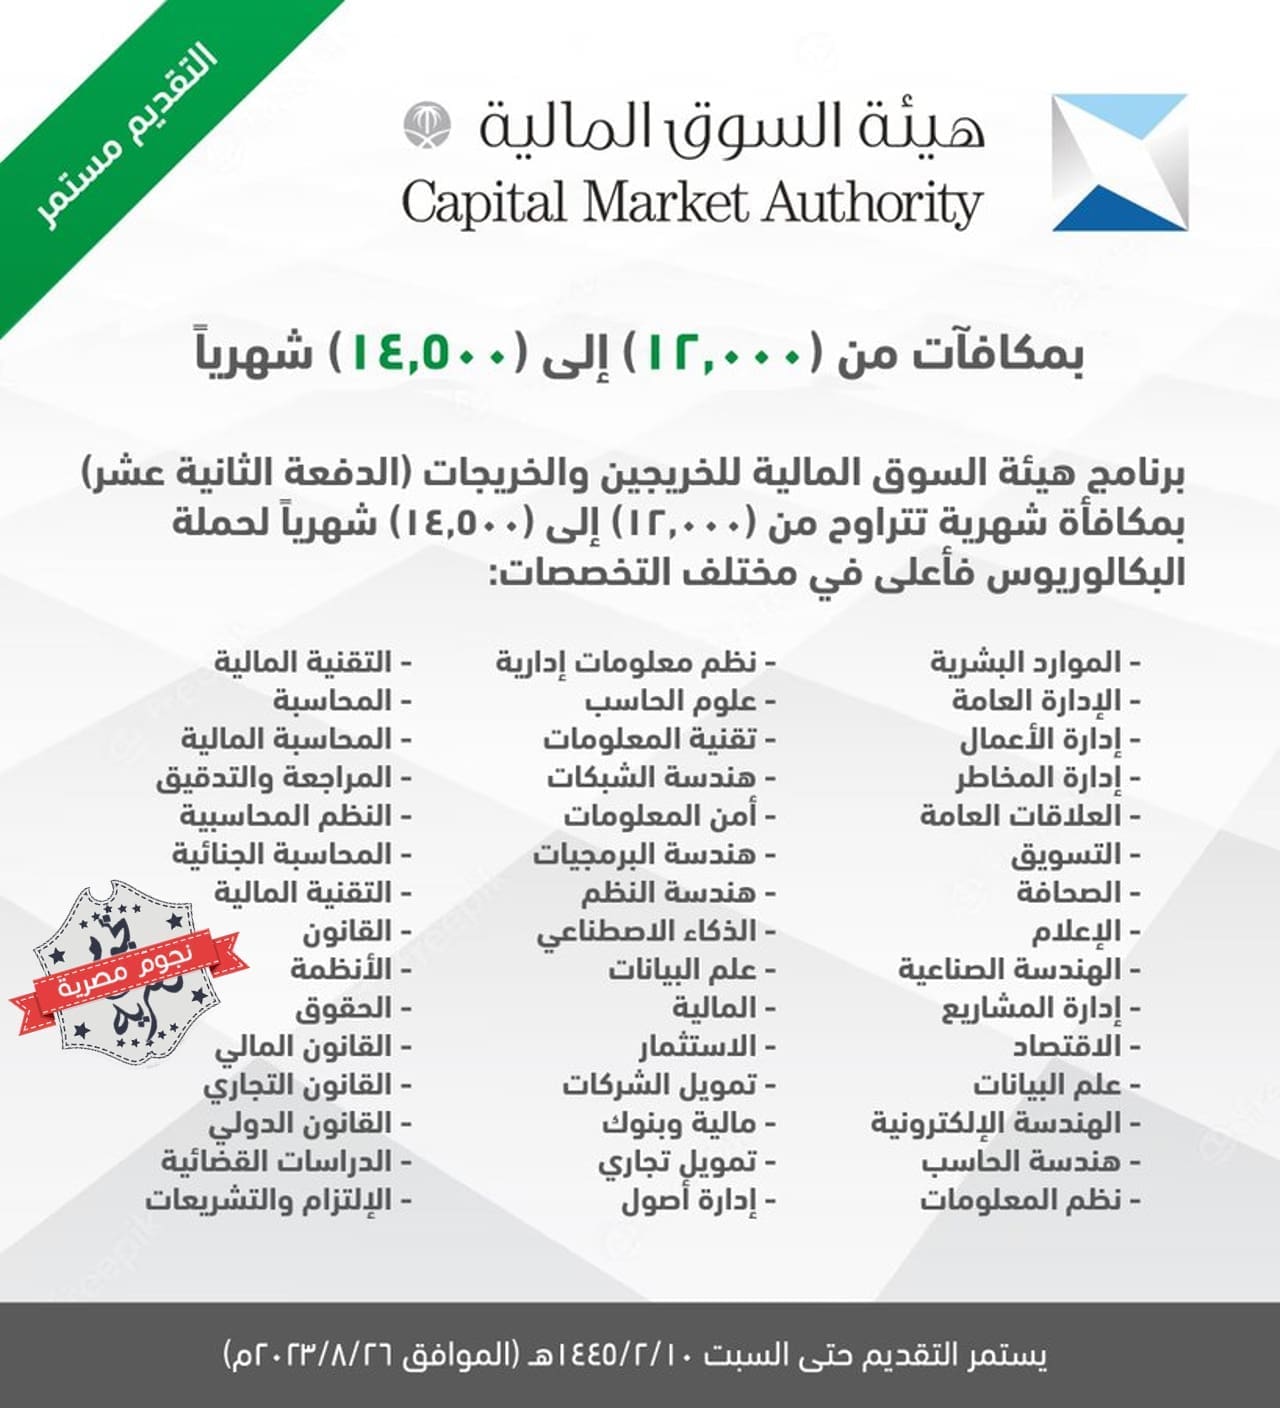 برنامج هيئة السوق المالية السعودية لتأهيل الخريجين (مصدر الصورة. الحساب الرسمي للهيئة على تويتر)